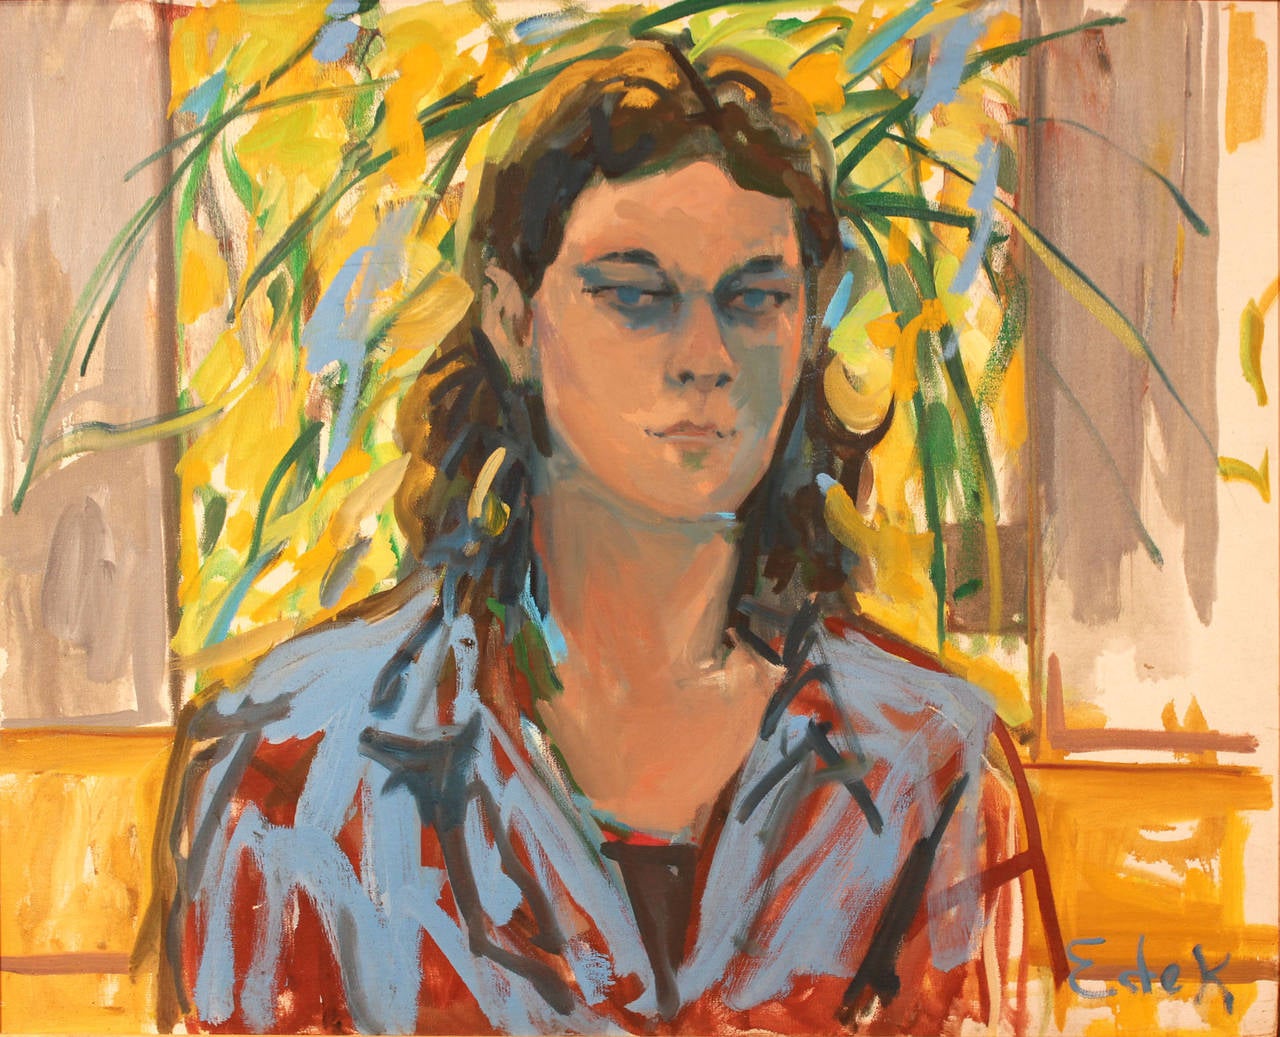 Elaine de Kooning Portrait Painting - Portrait of a Young Man